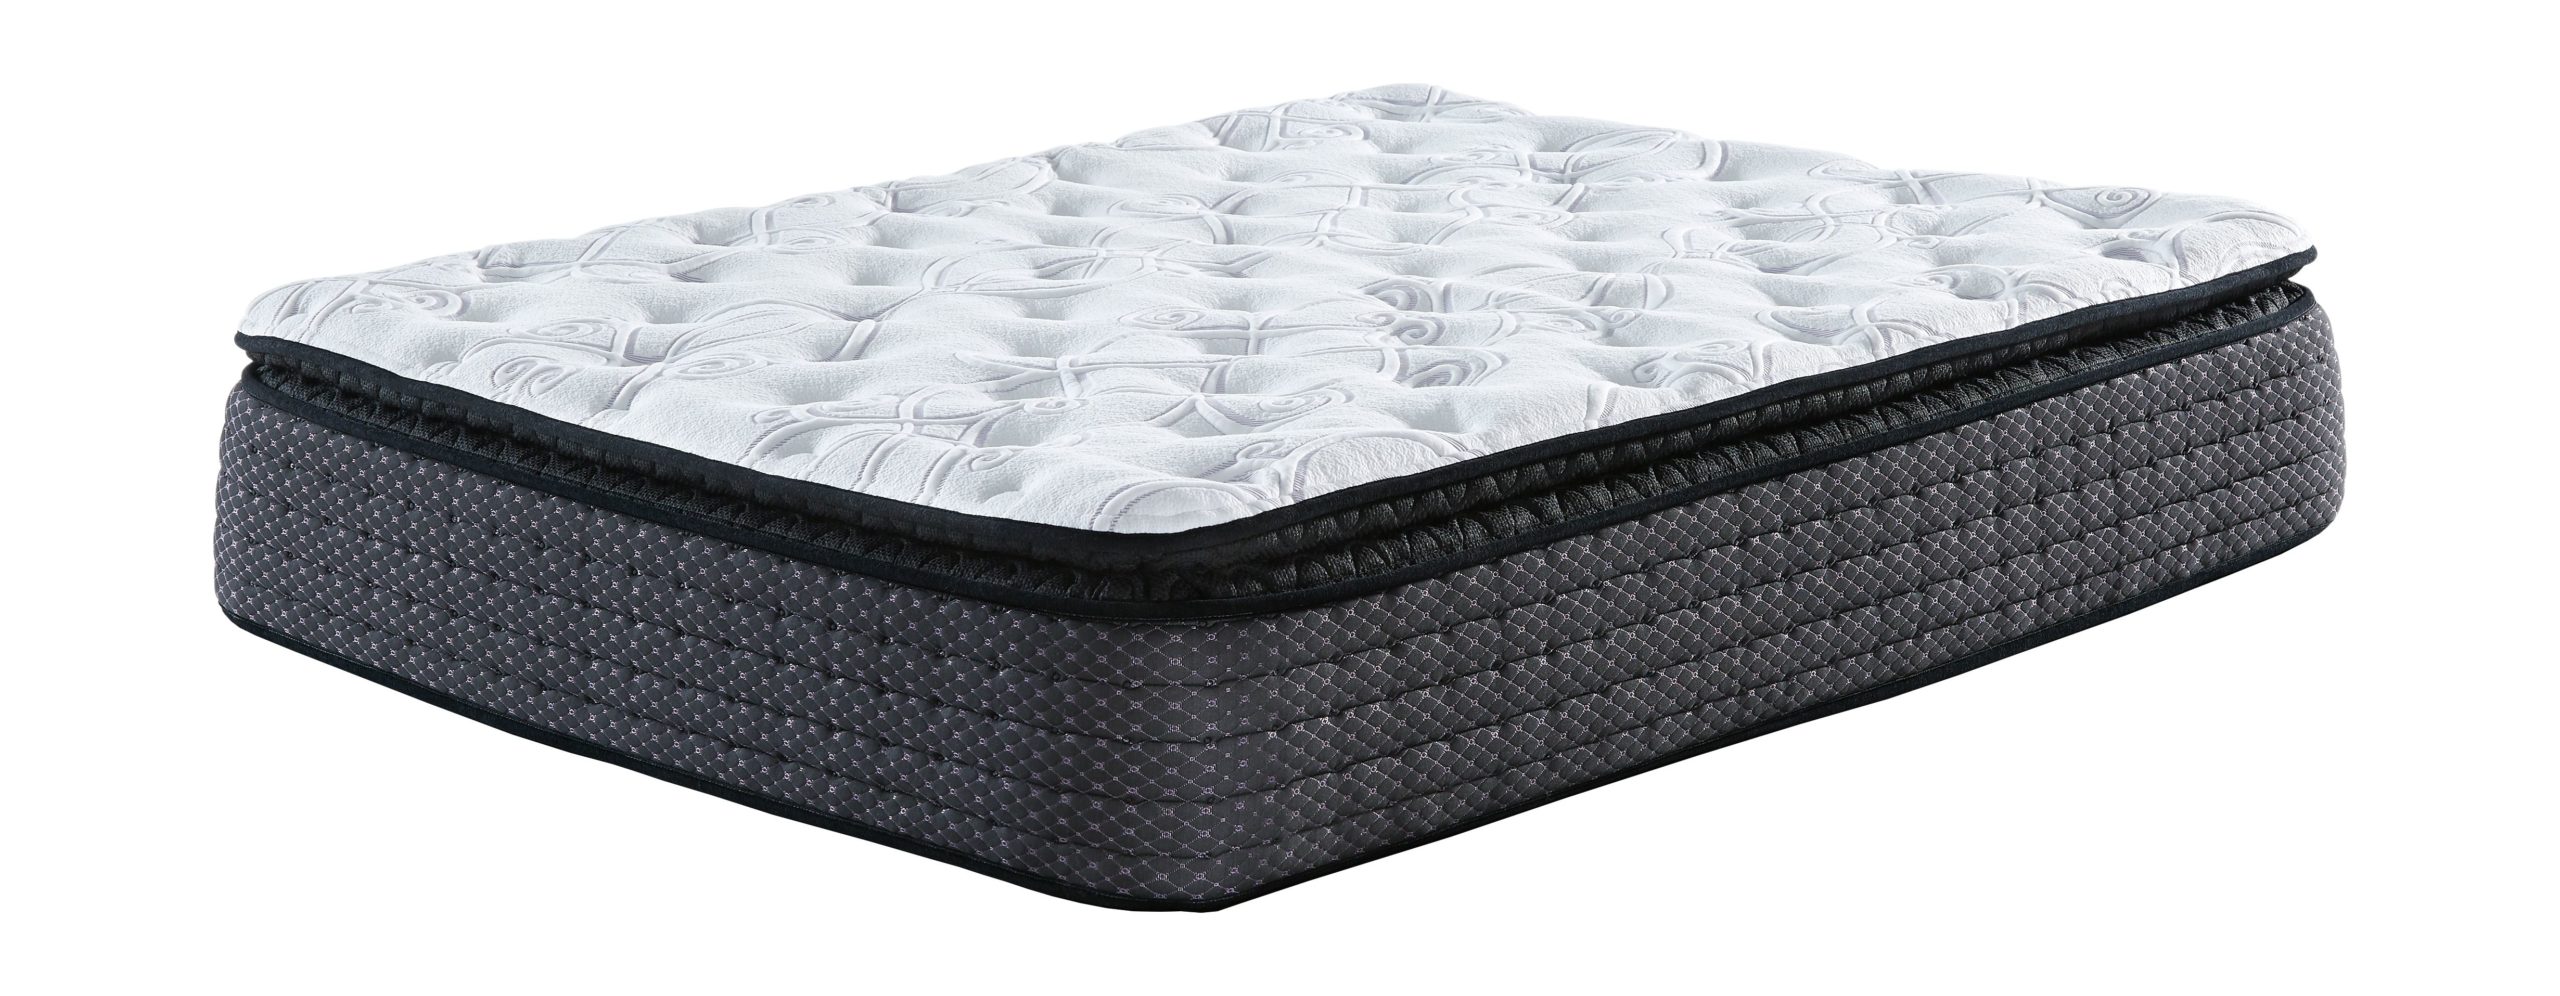 custom comfort pillowtop mattress for sale